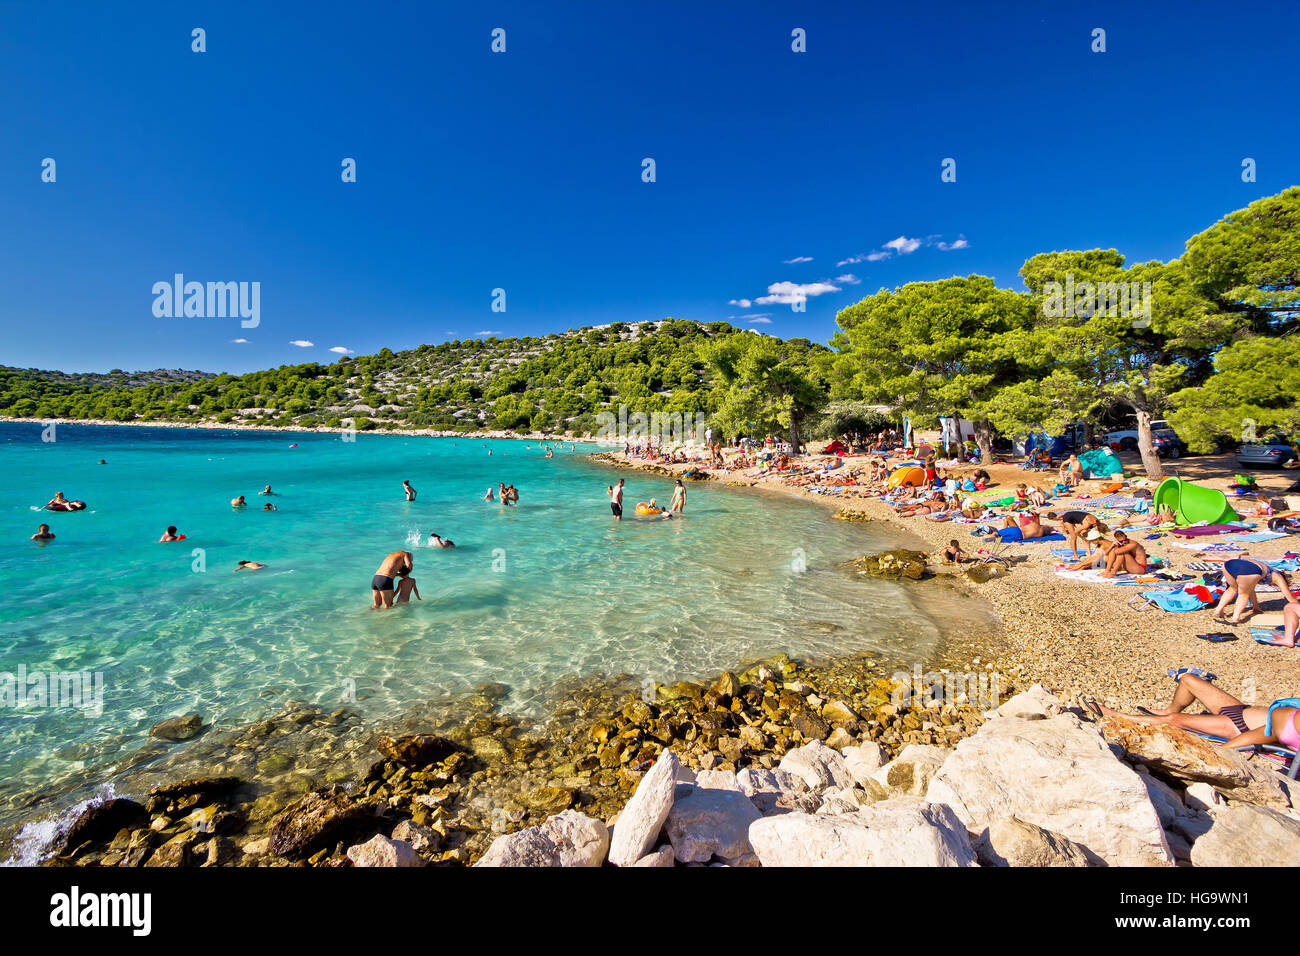 MURTER, Croatie - 17 août : non identifie les personnes bénéficiant de l'été sur holldays turquoise clair cristal beach en Croatie, Dalmatie île de Murter, regi Banque D'Images